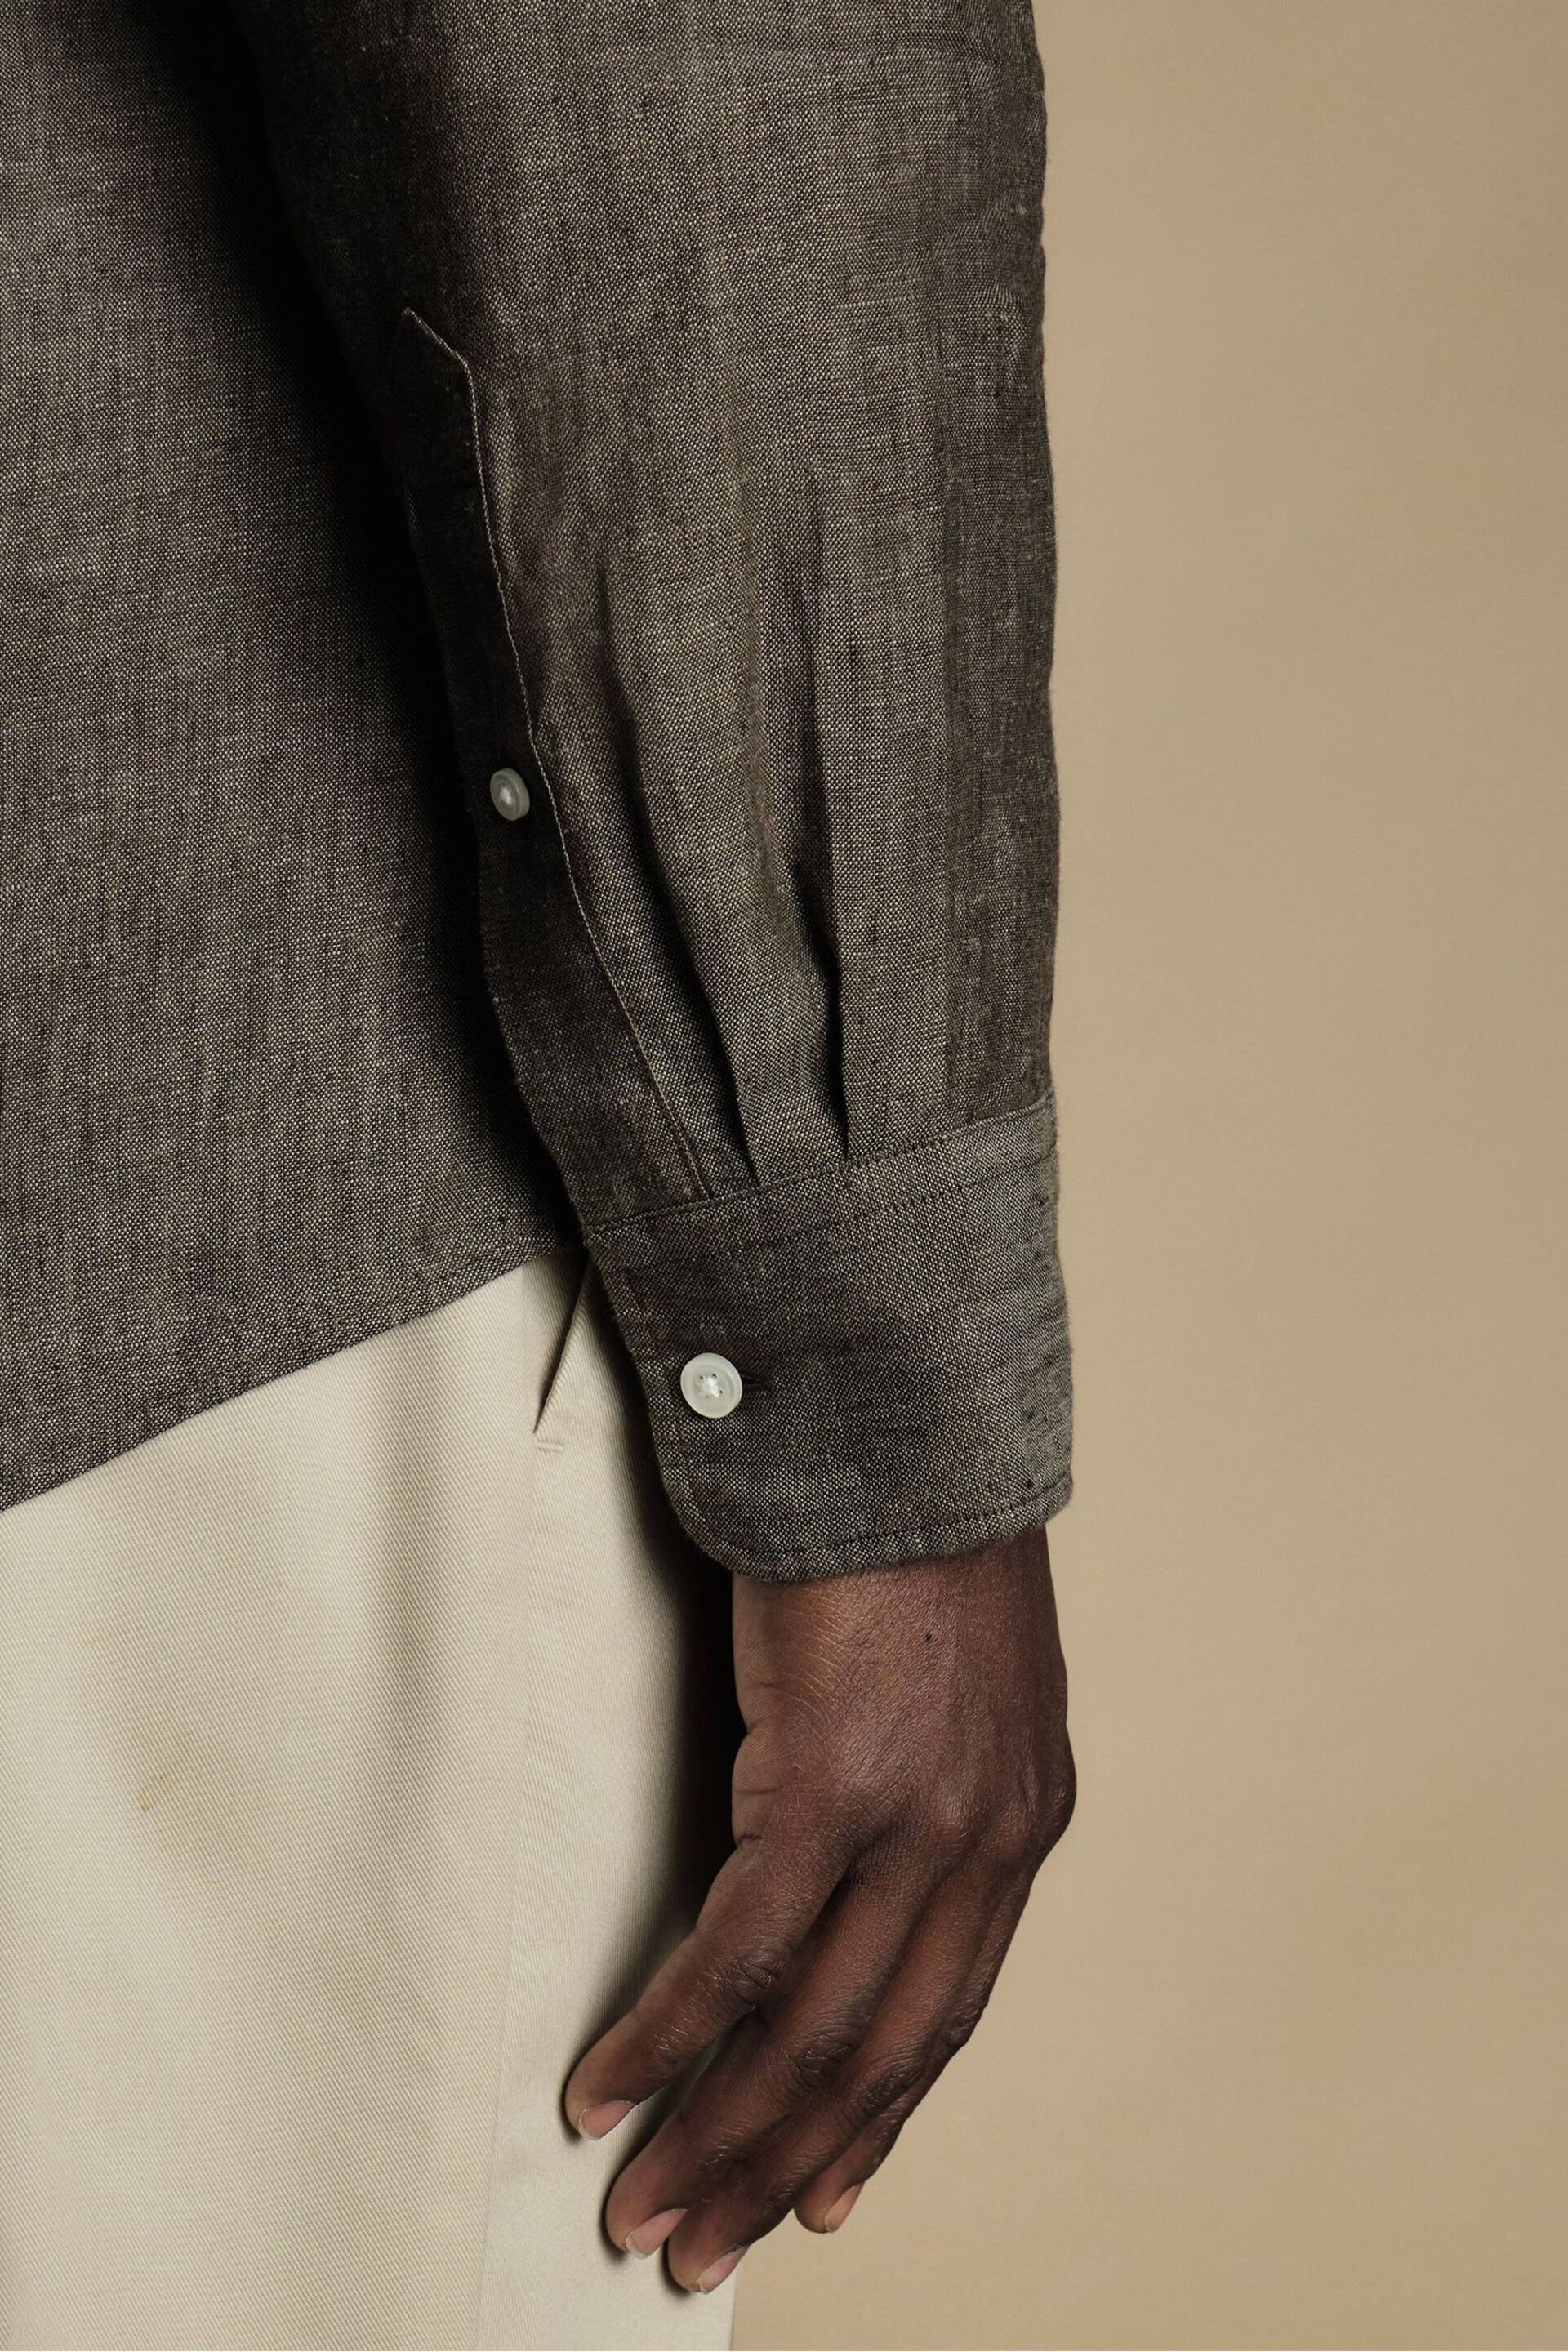 Charles Tyrwhitt Brown/Cream Slim Fit Plain Short Sleeve Pure Linen Full Sleeves Shirt - Image 3 of 6